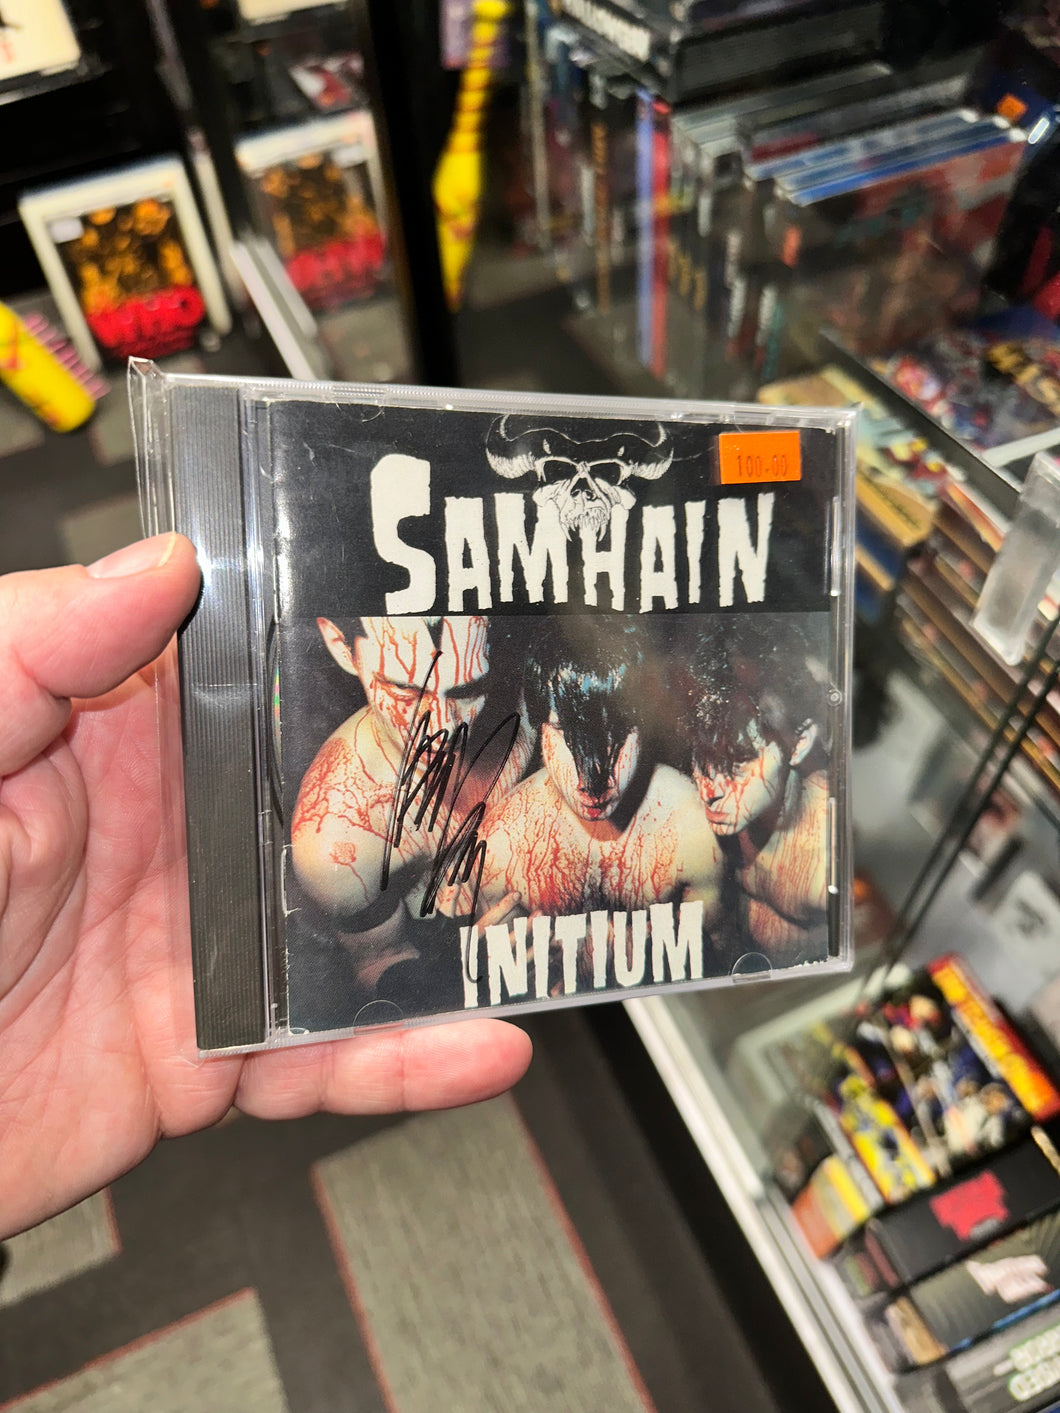 Samhain Initium CD 2nd Pressing Danzig